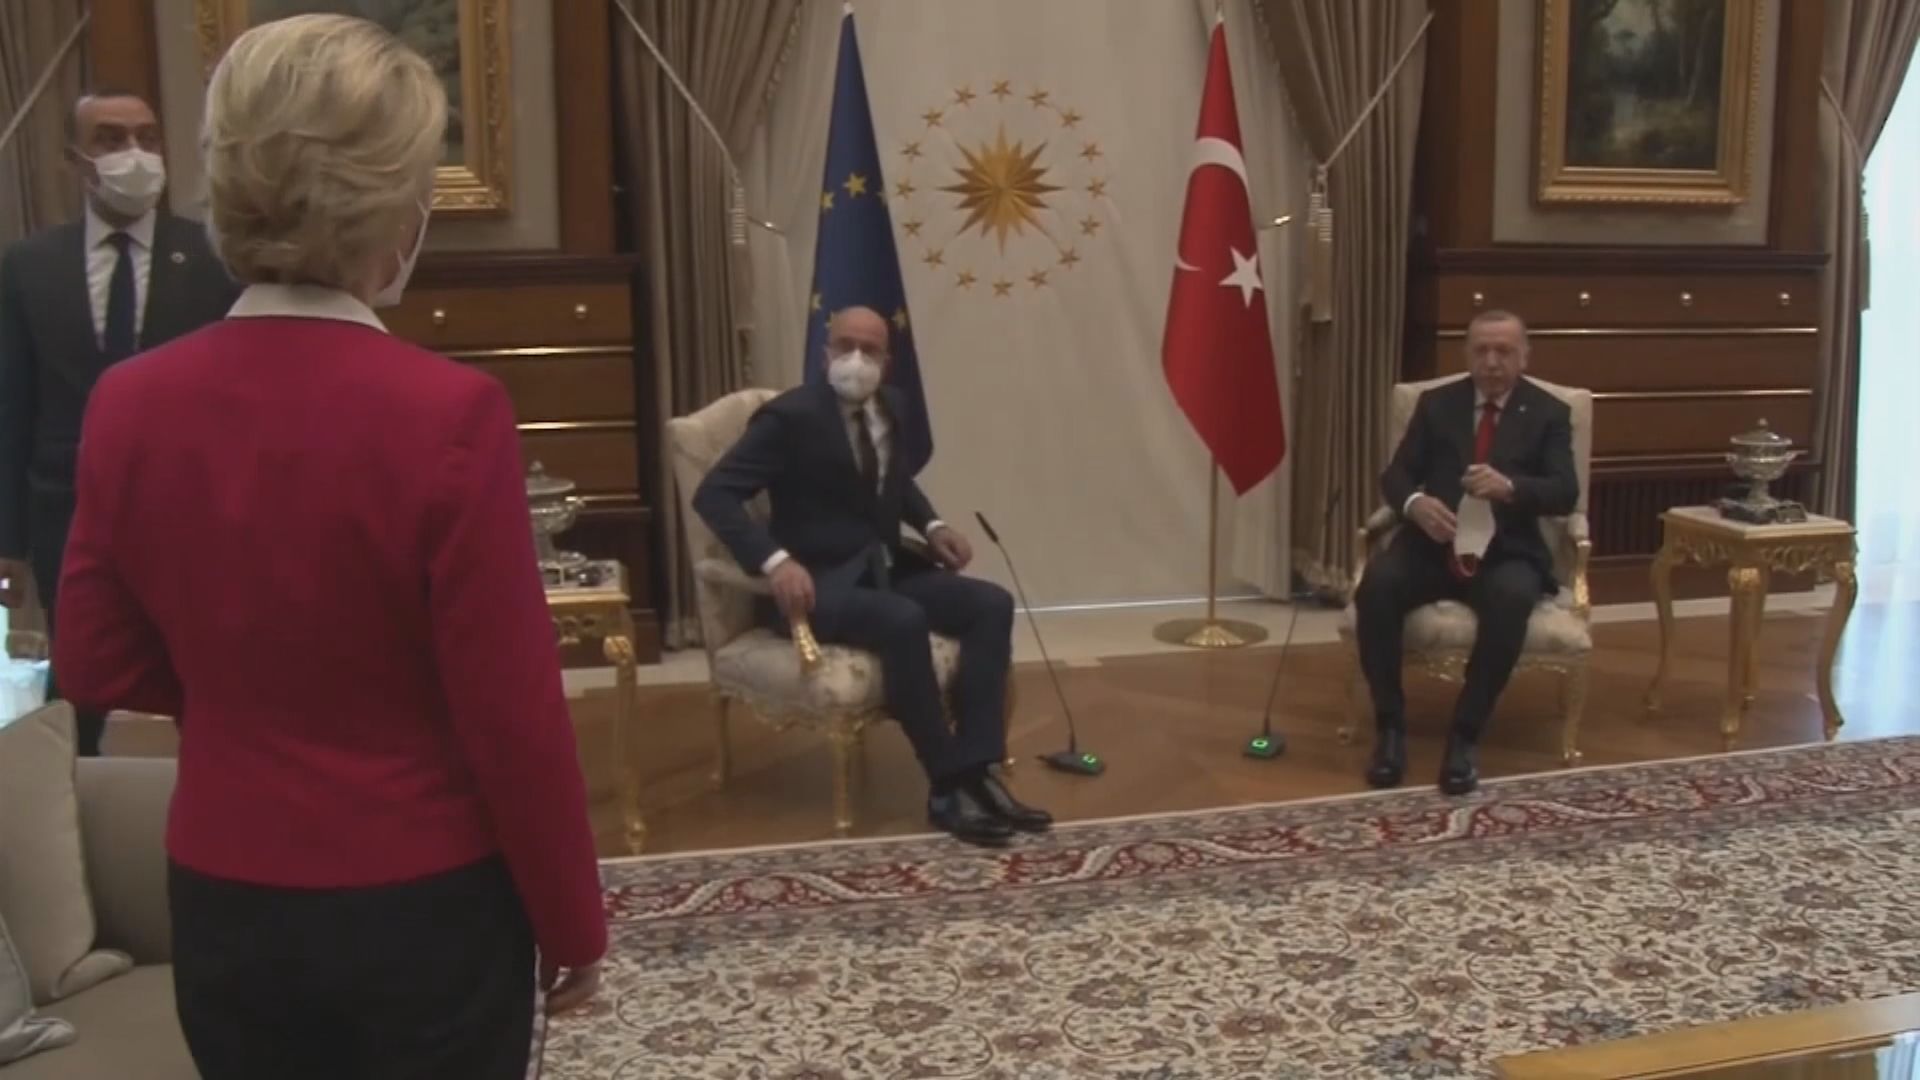 【環球薈報】馮德萊恩會見土耳其總統不獲安排相鄰而坐